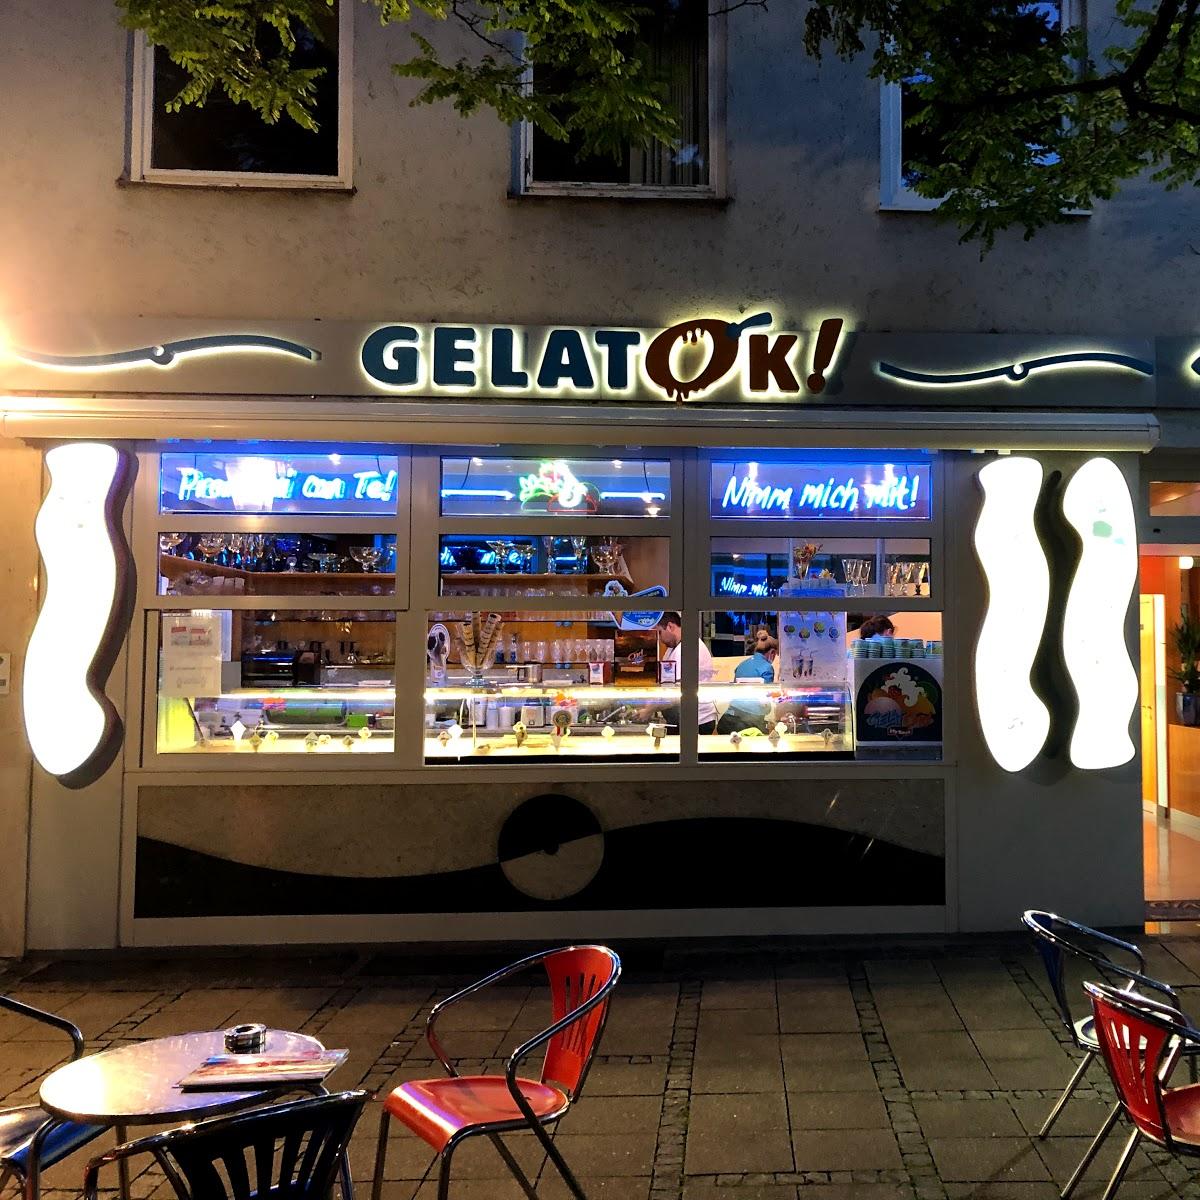 Restaurant "Eisdiele GelatOk! Weilheim" in Weilheim in Oberbayern